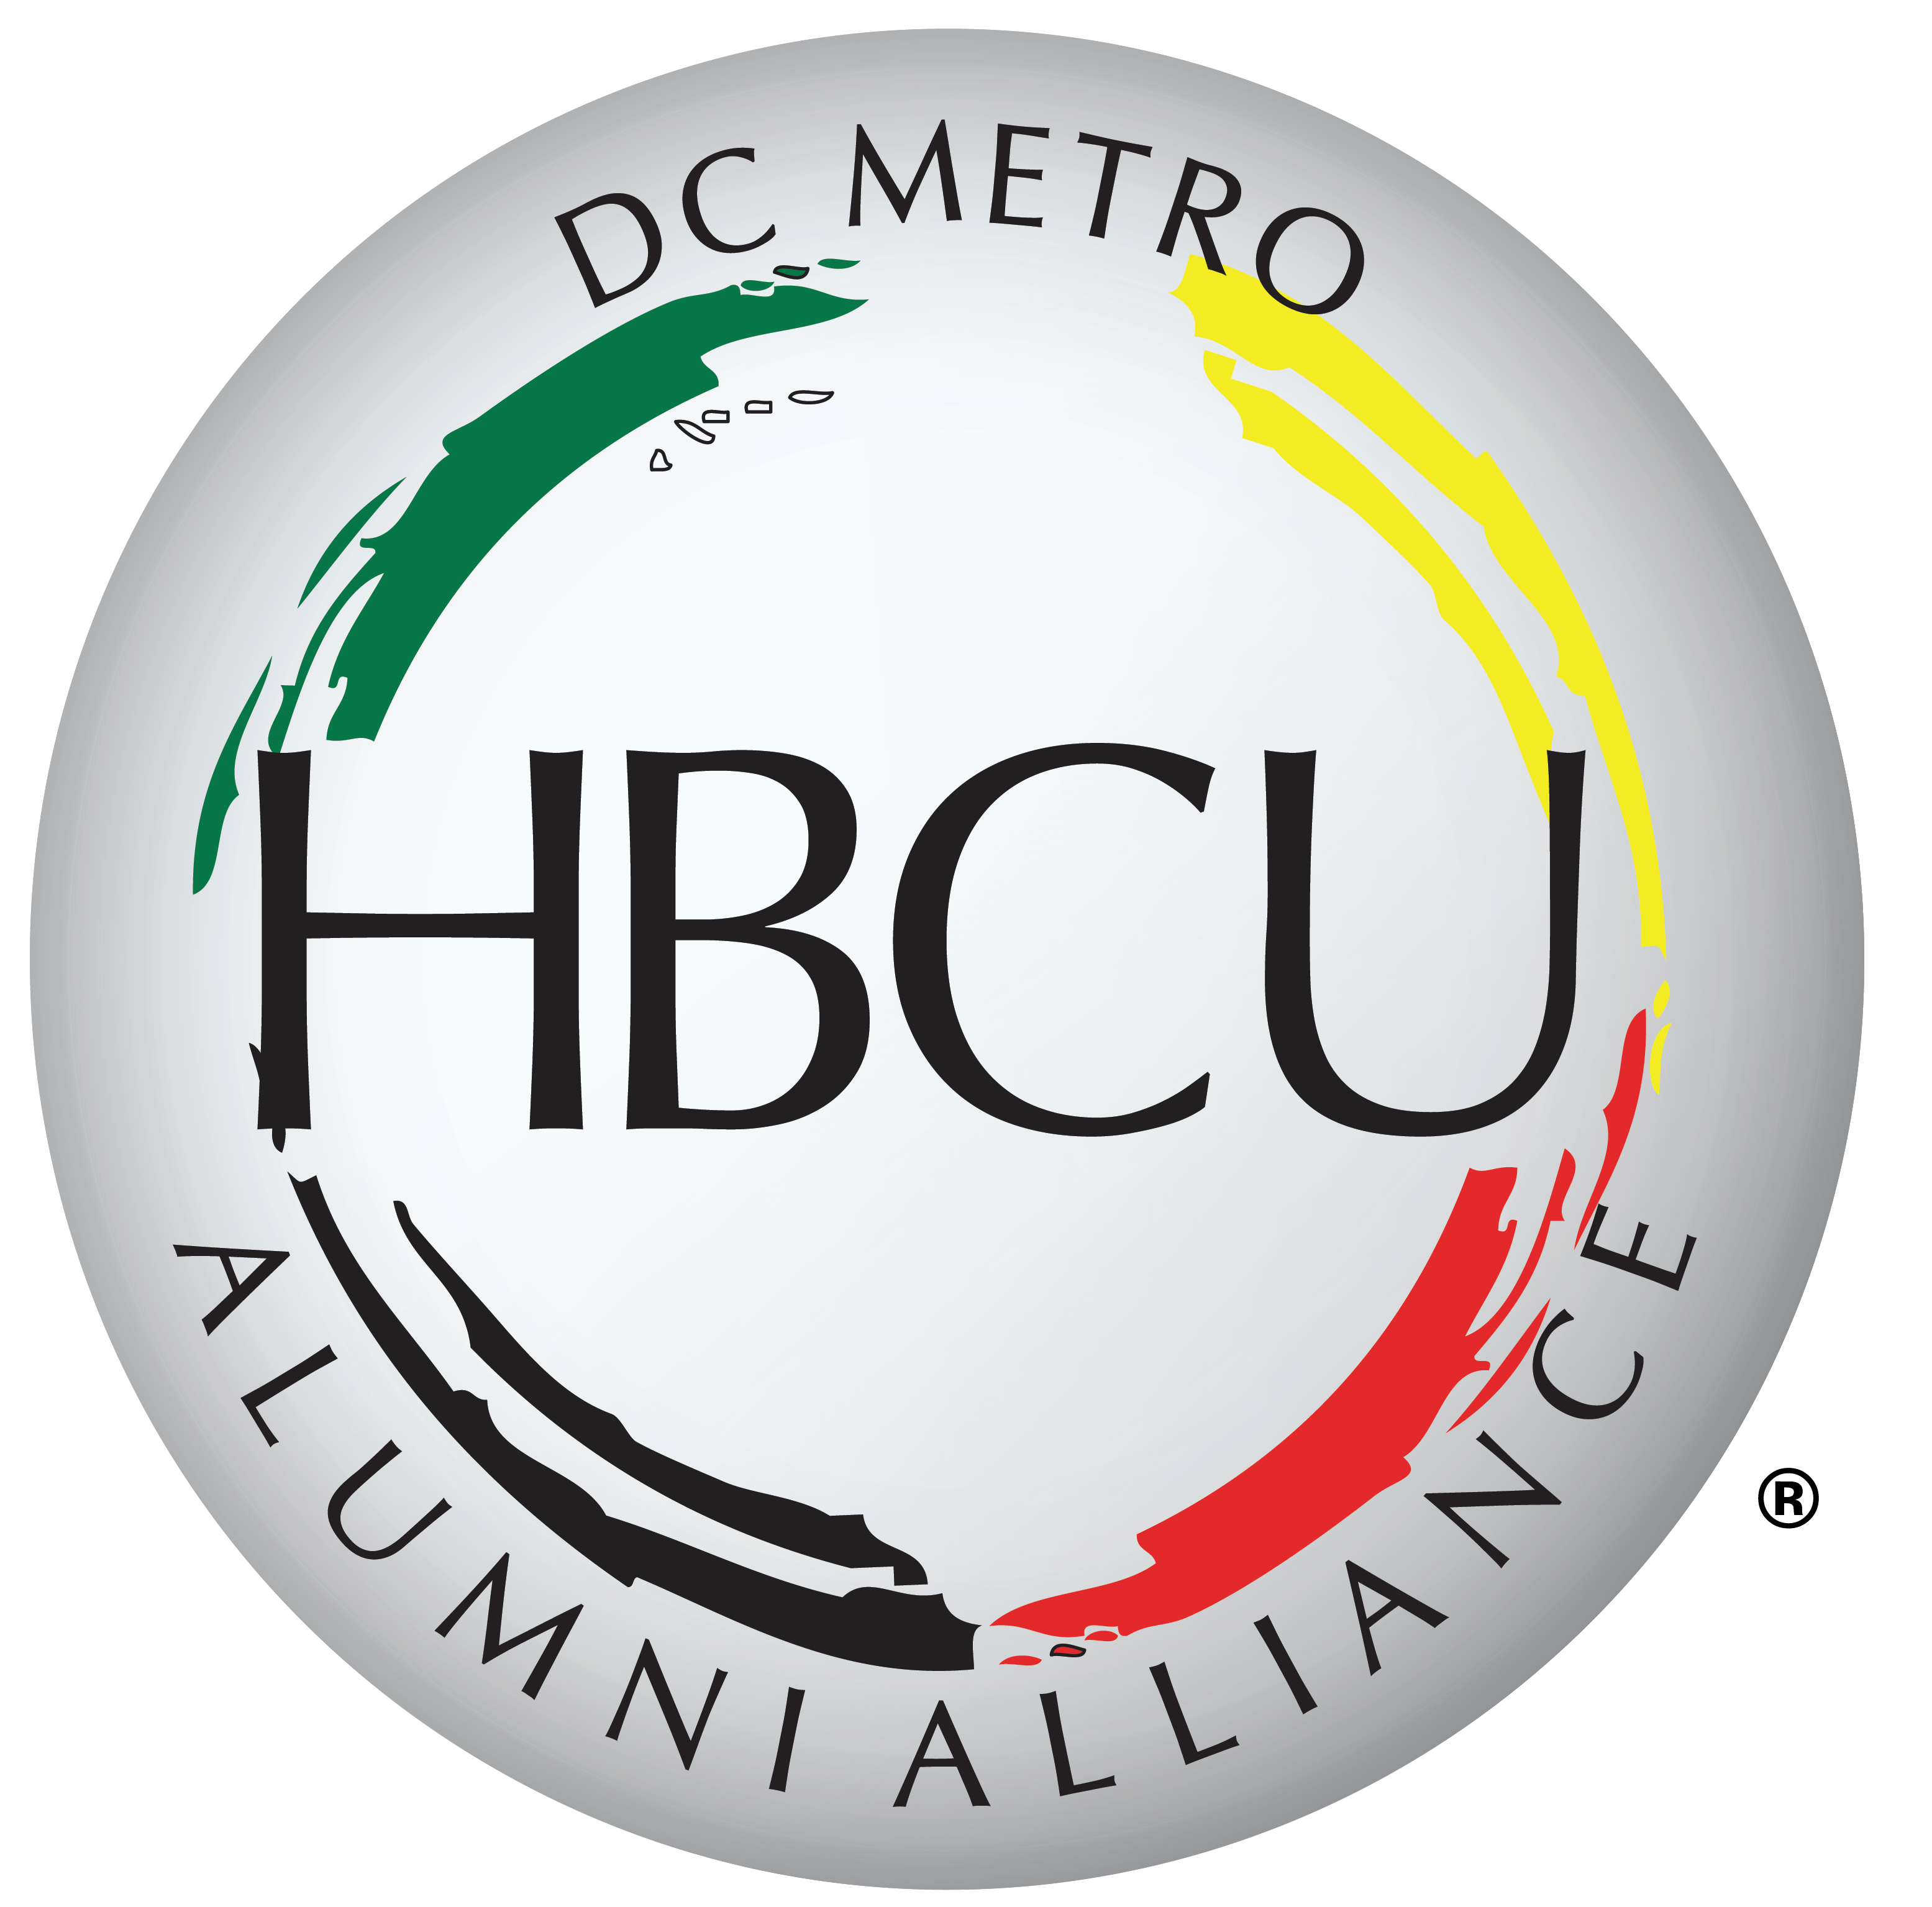 cropped-DC-Metro-HBCUAA-Logo-1.png